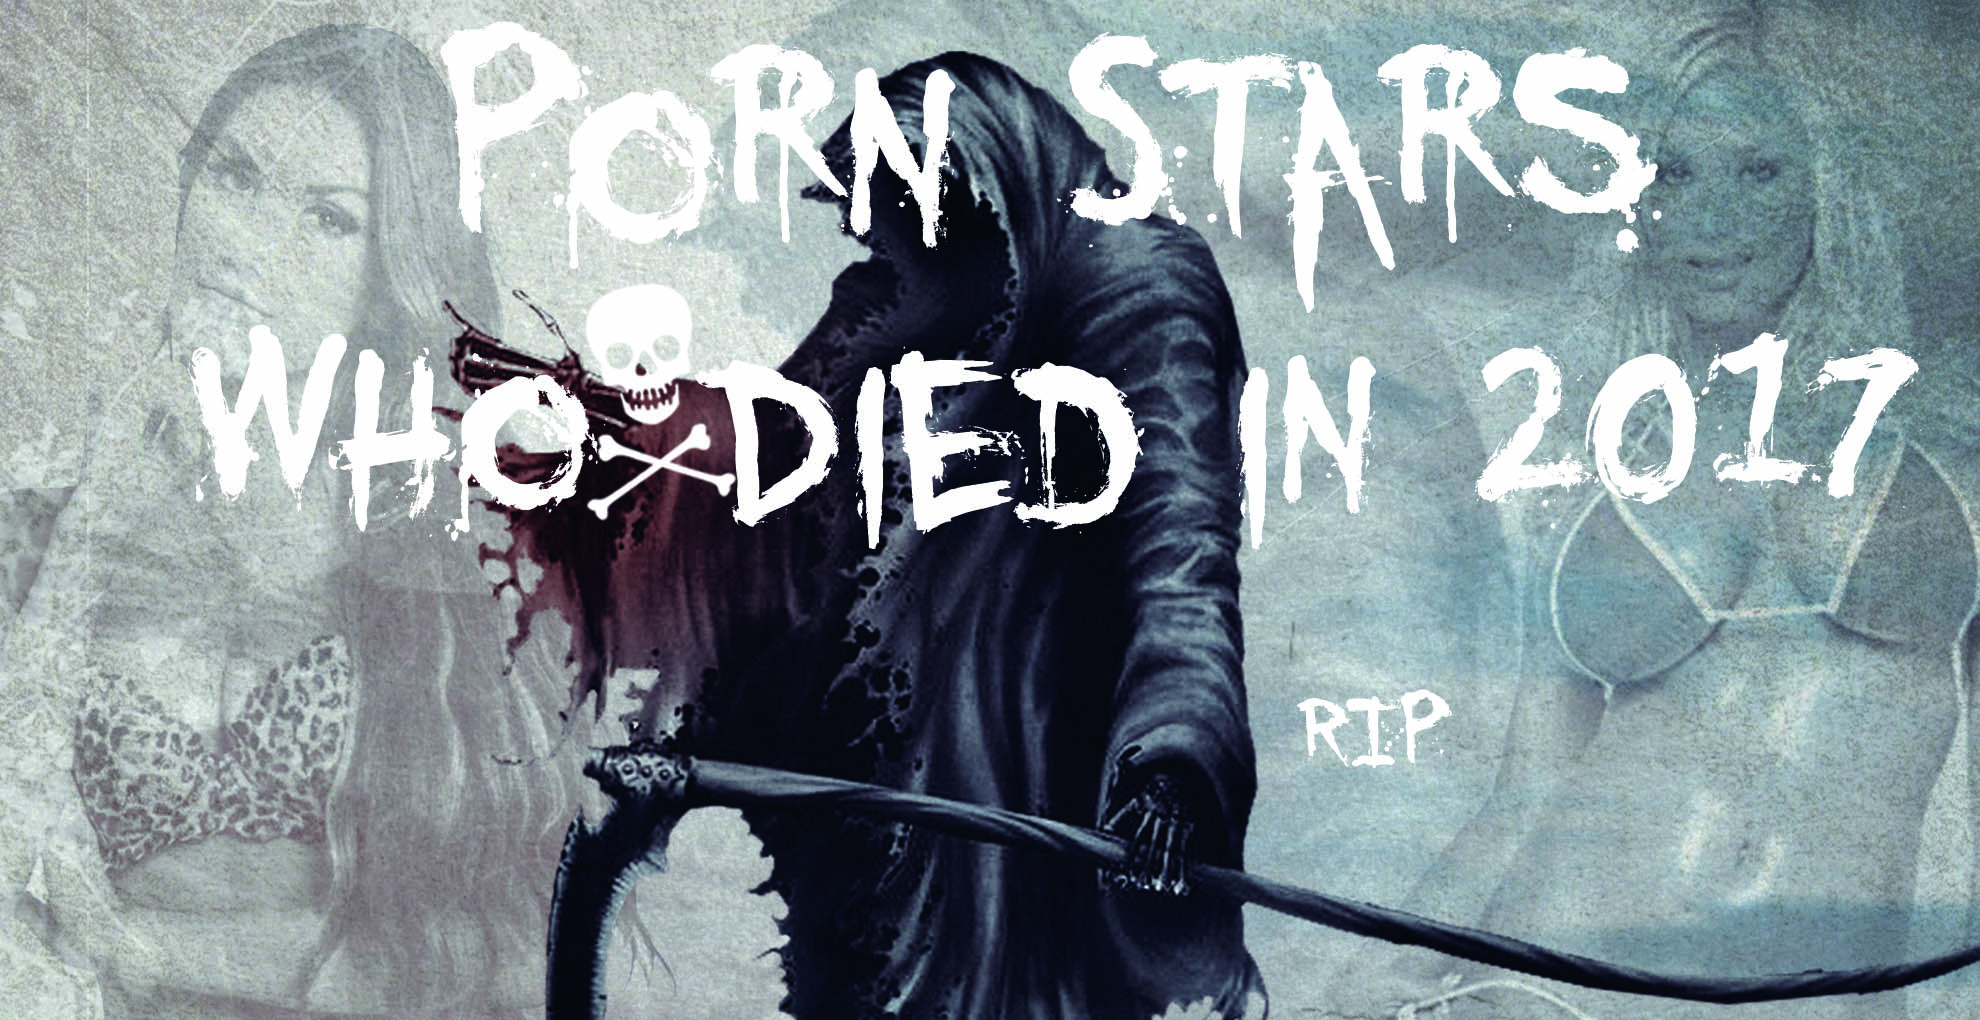 Amadahy porn star dead